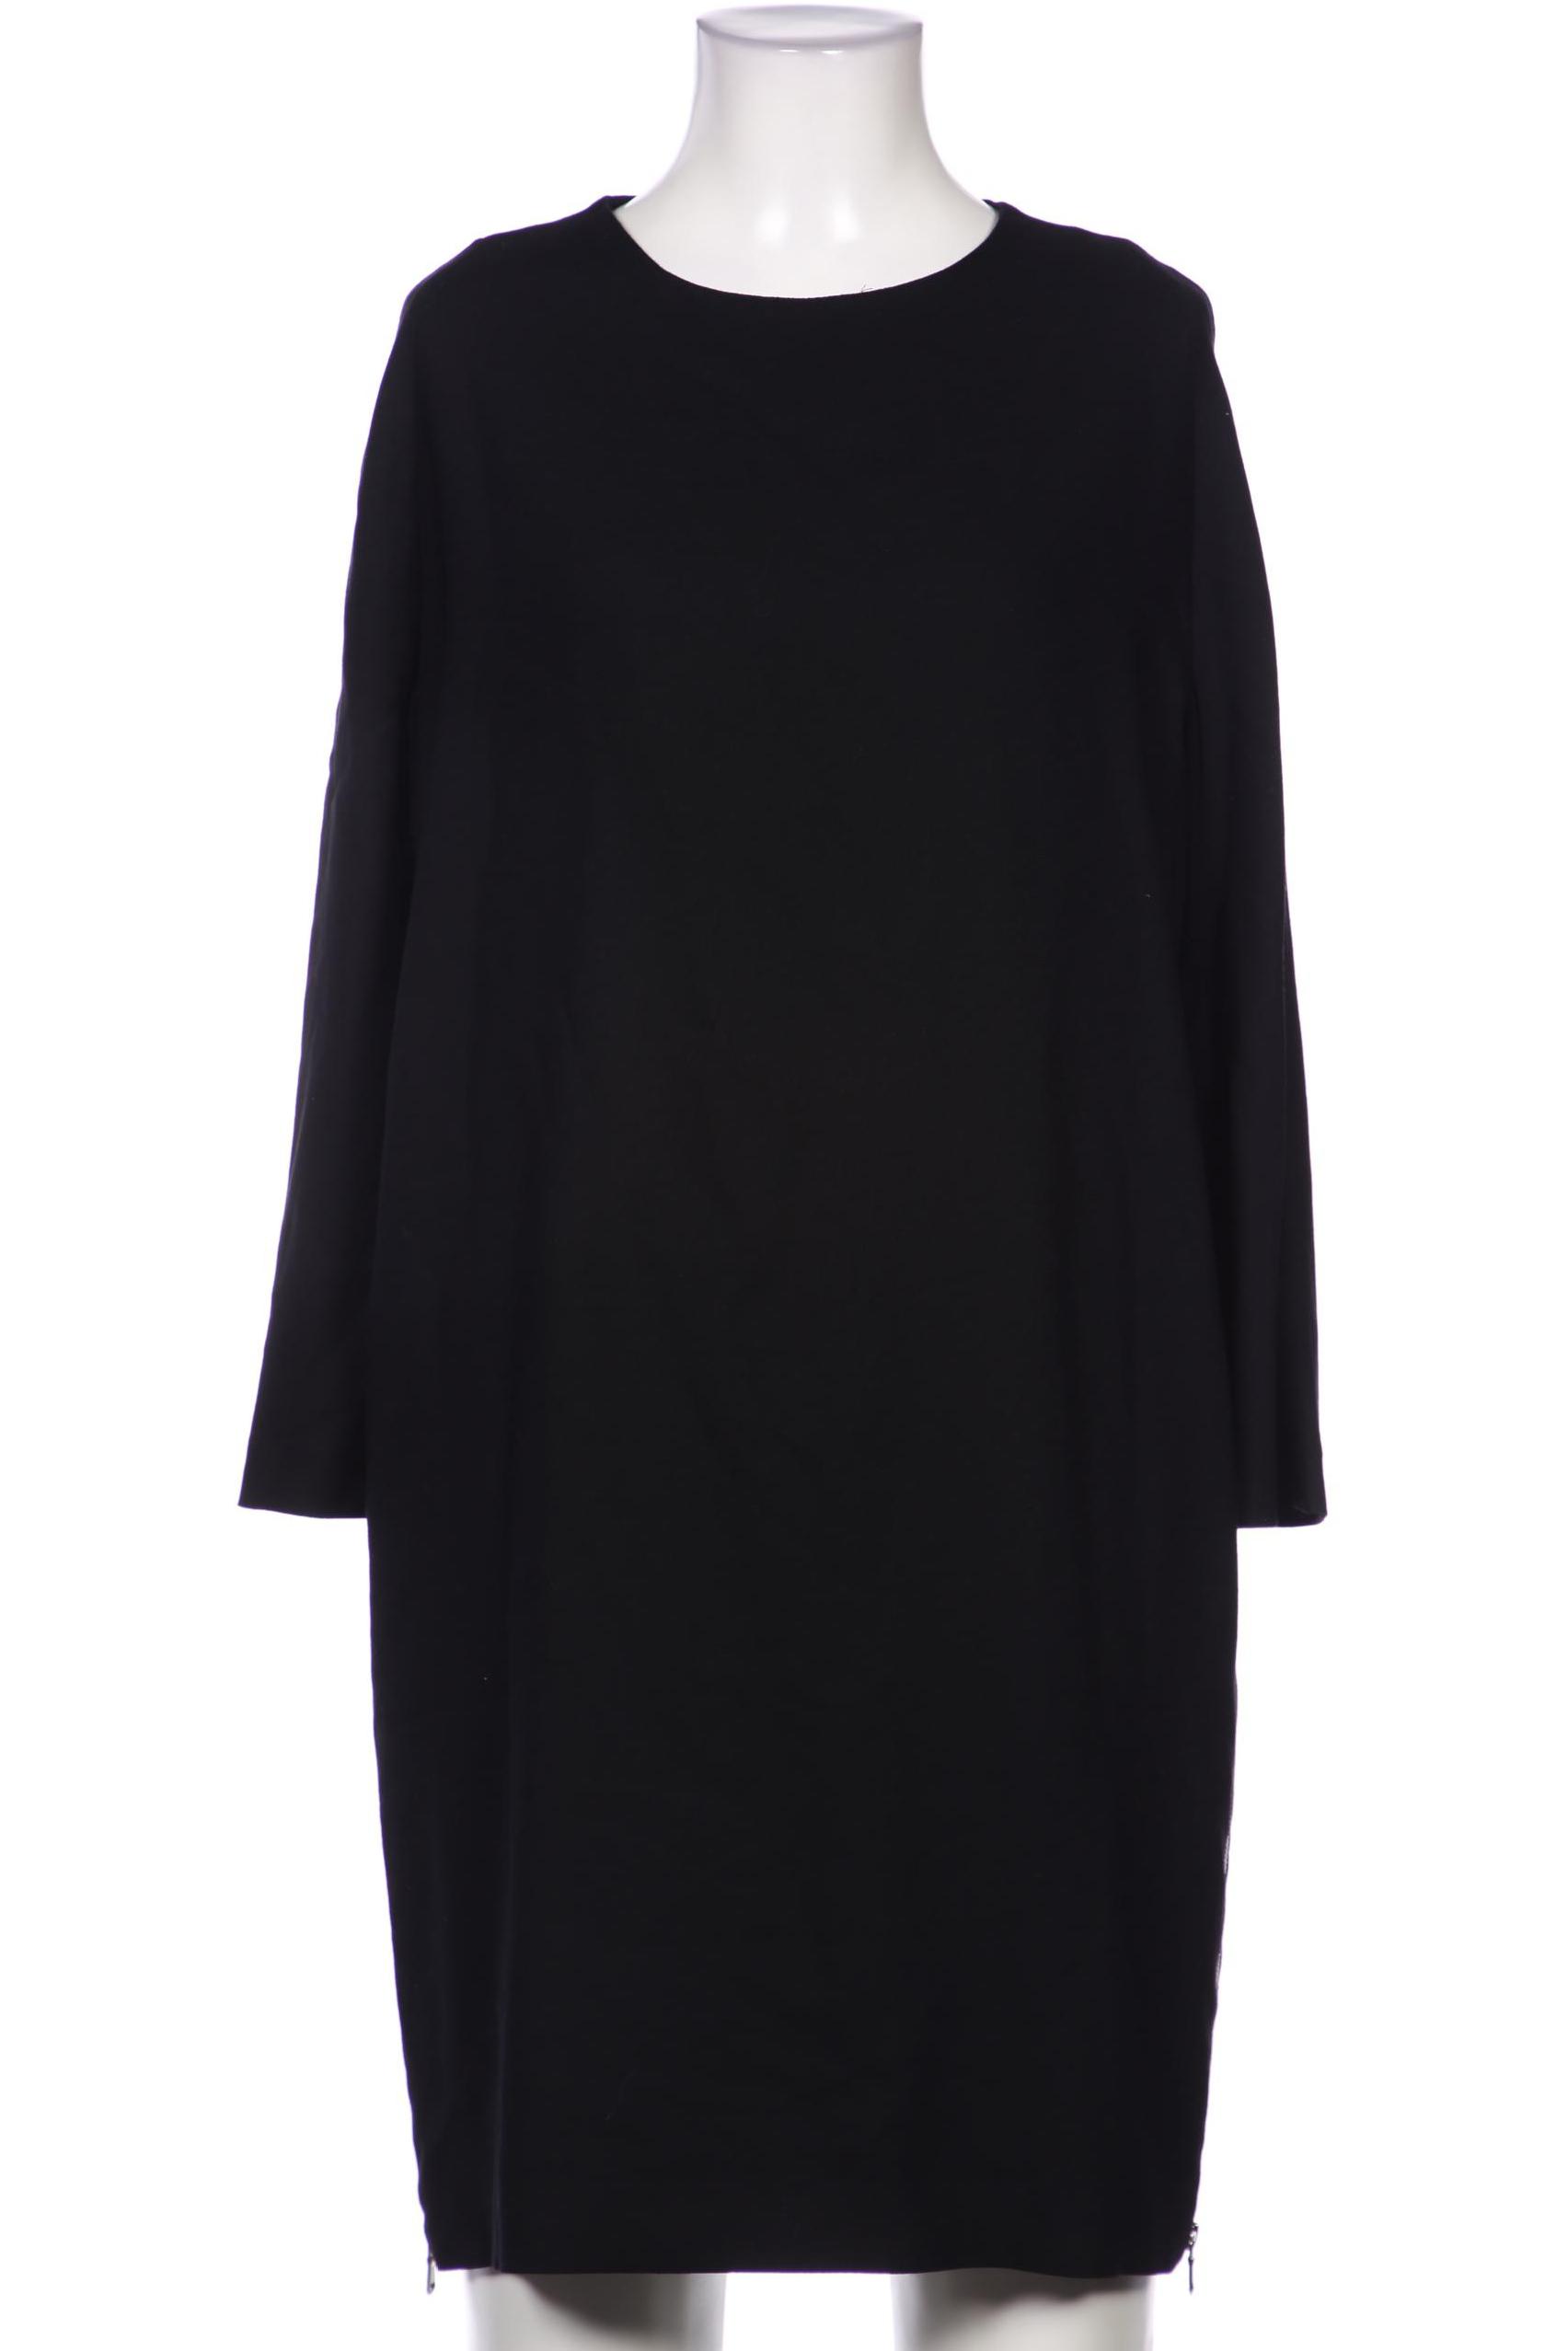 hessnatur Damen Kleid, schwarz, Gr. 36 von hessnatur